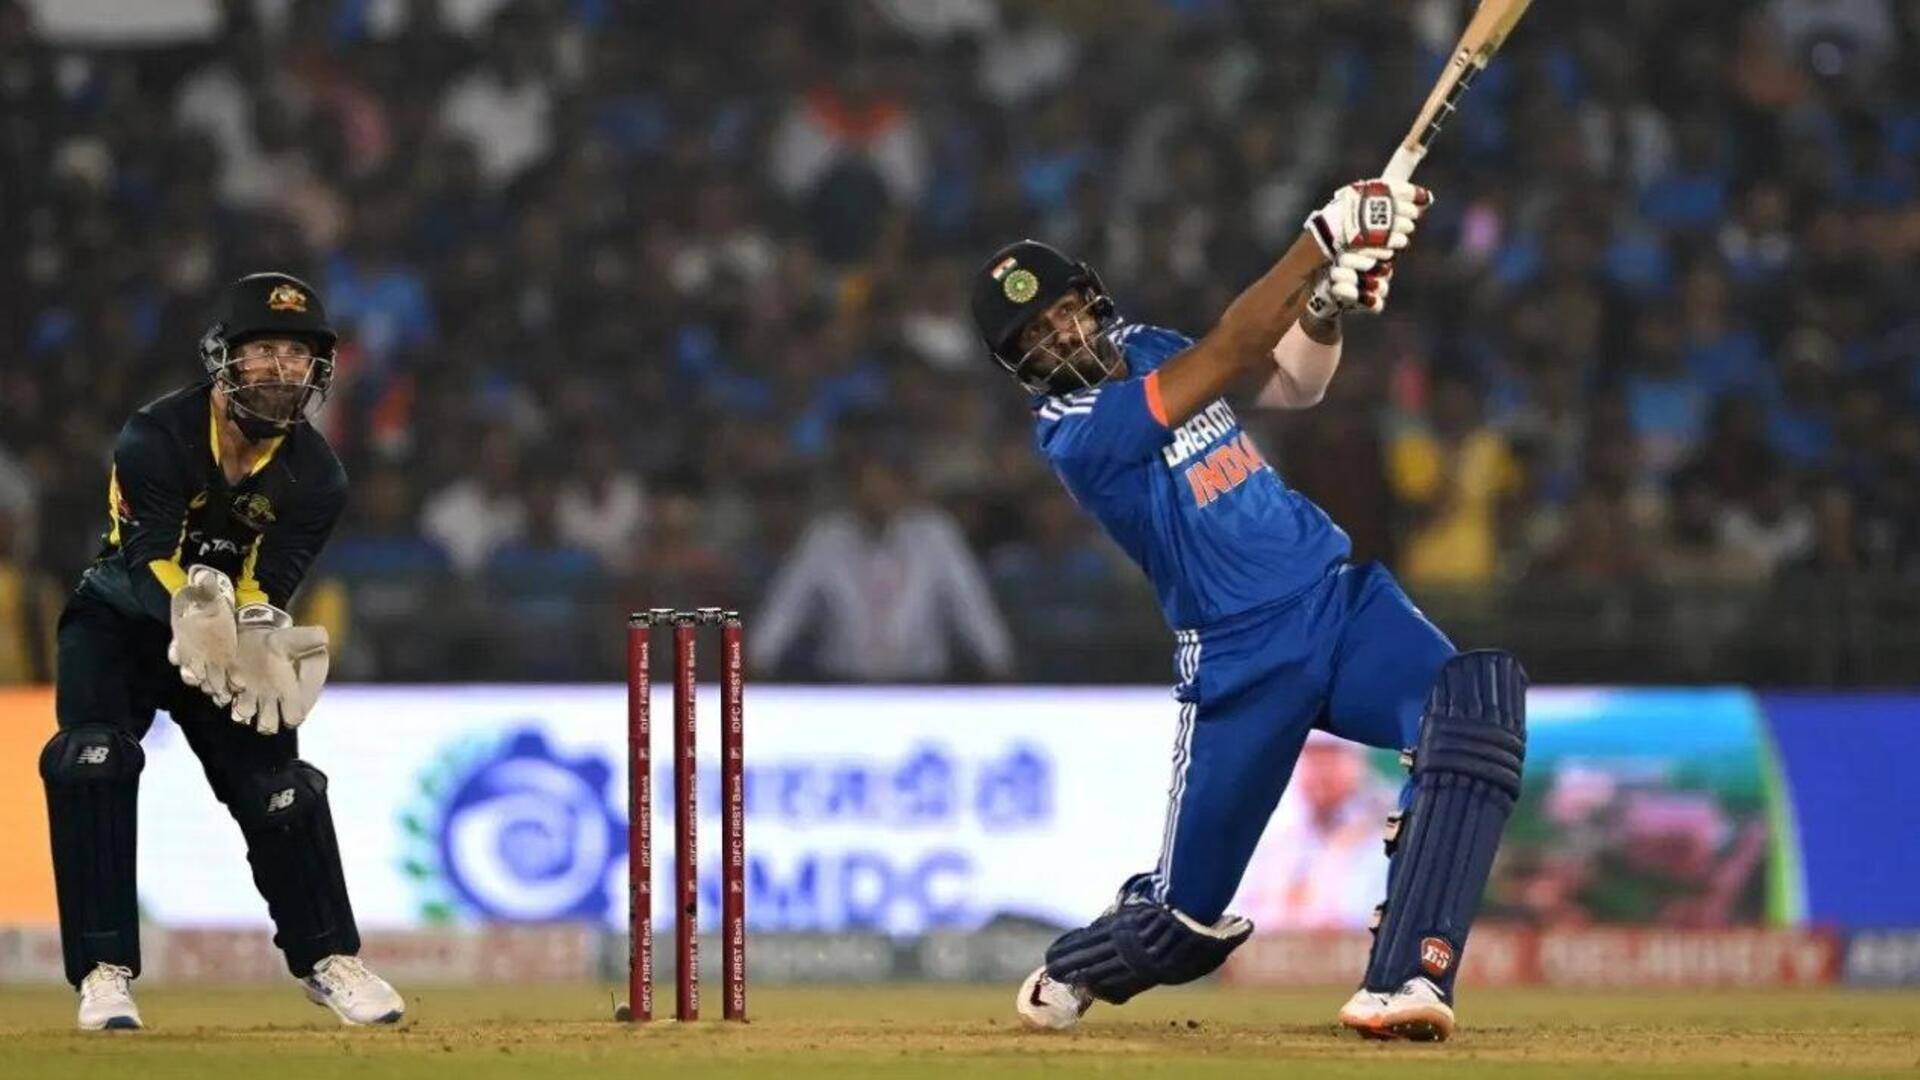 இந்தியா vs ஆஸ்திரேலியா ஐந்தாவது T20I : முன்னோட்டம் மற்றும் புள்ளிவிபரங்கள்